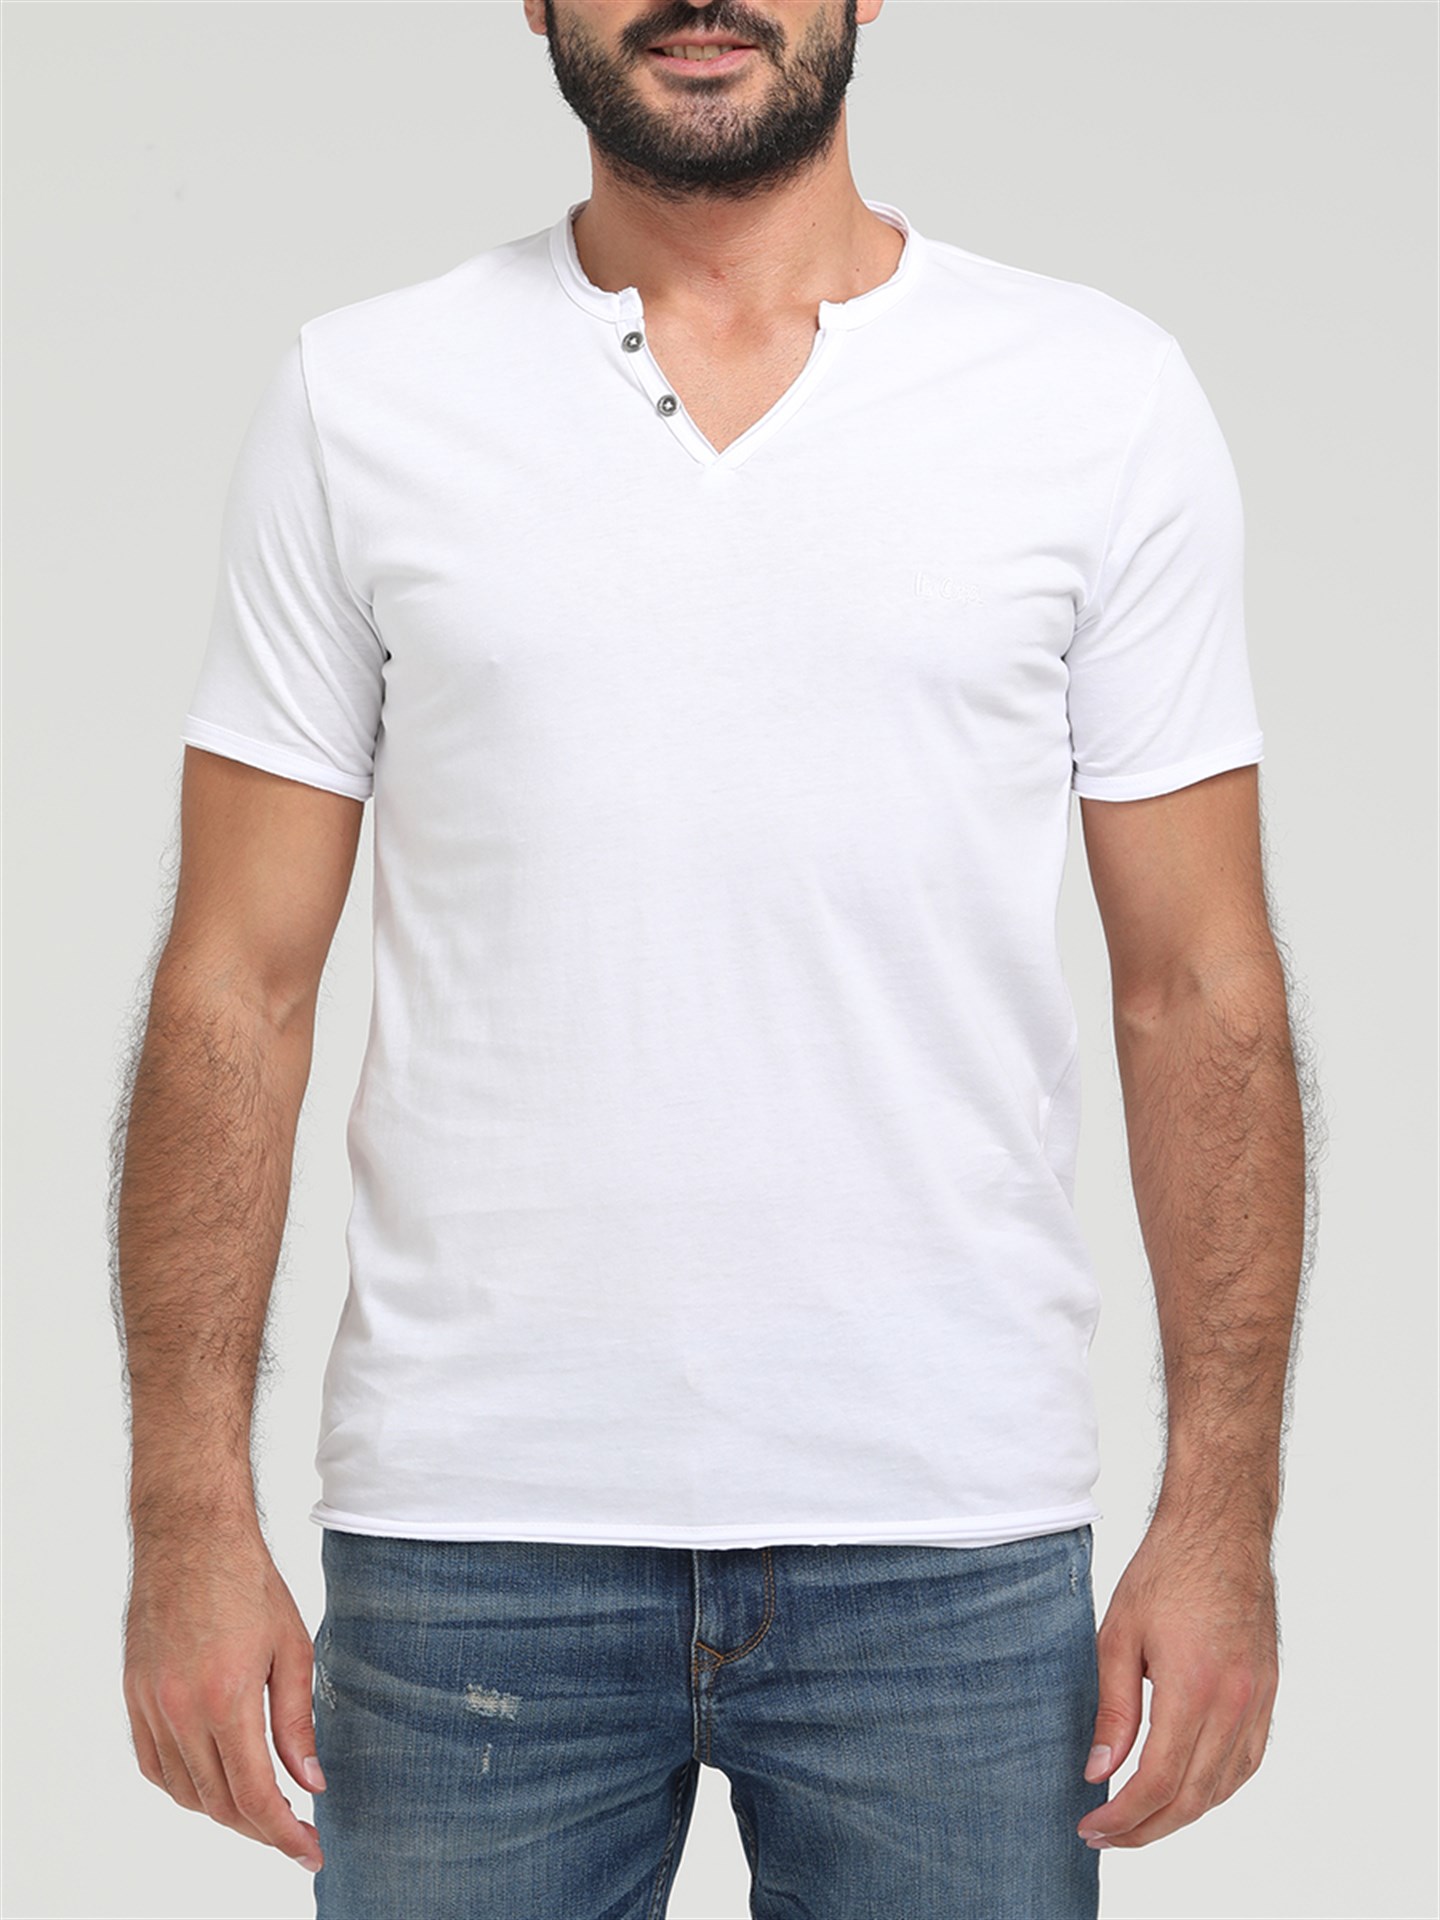 Lee Cooper Target Erkek V Yaka Patlı T-Shirt Siyah. 1